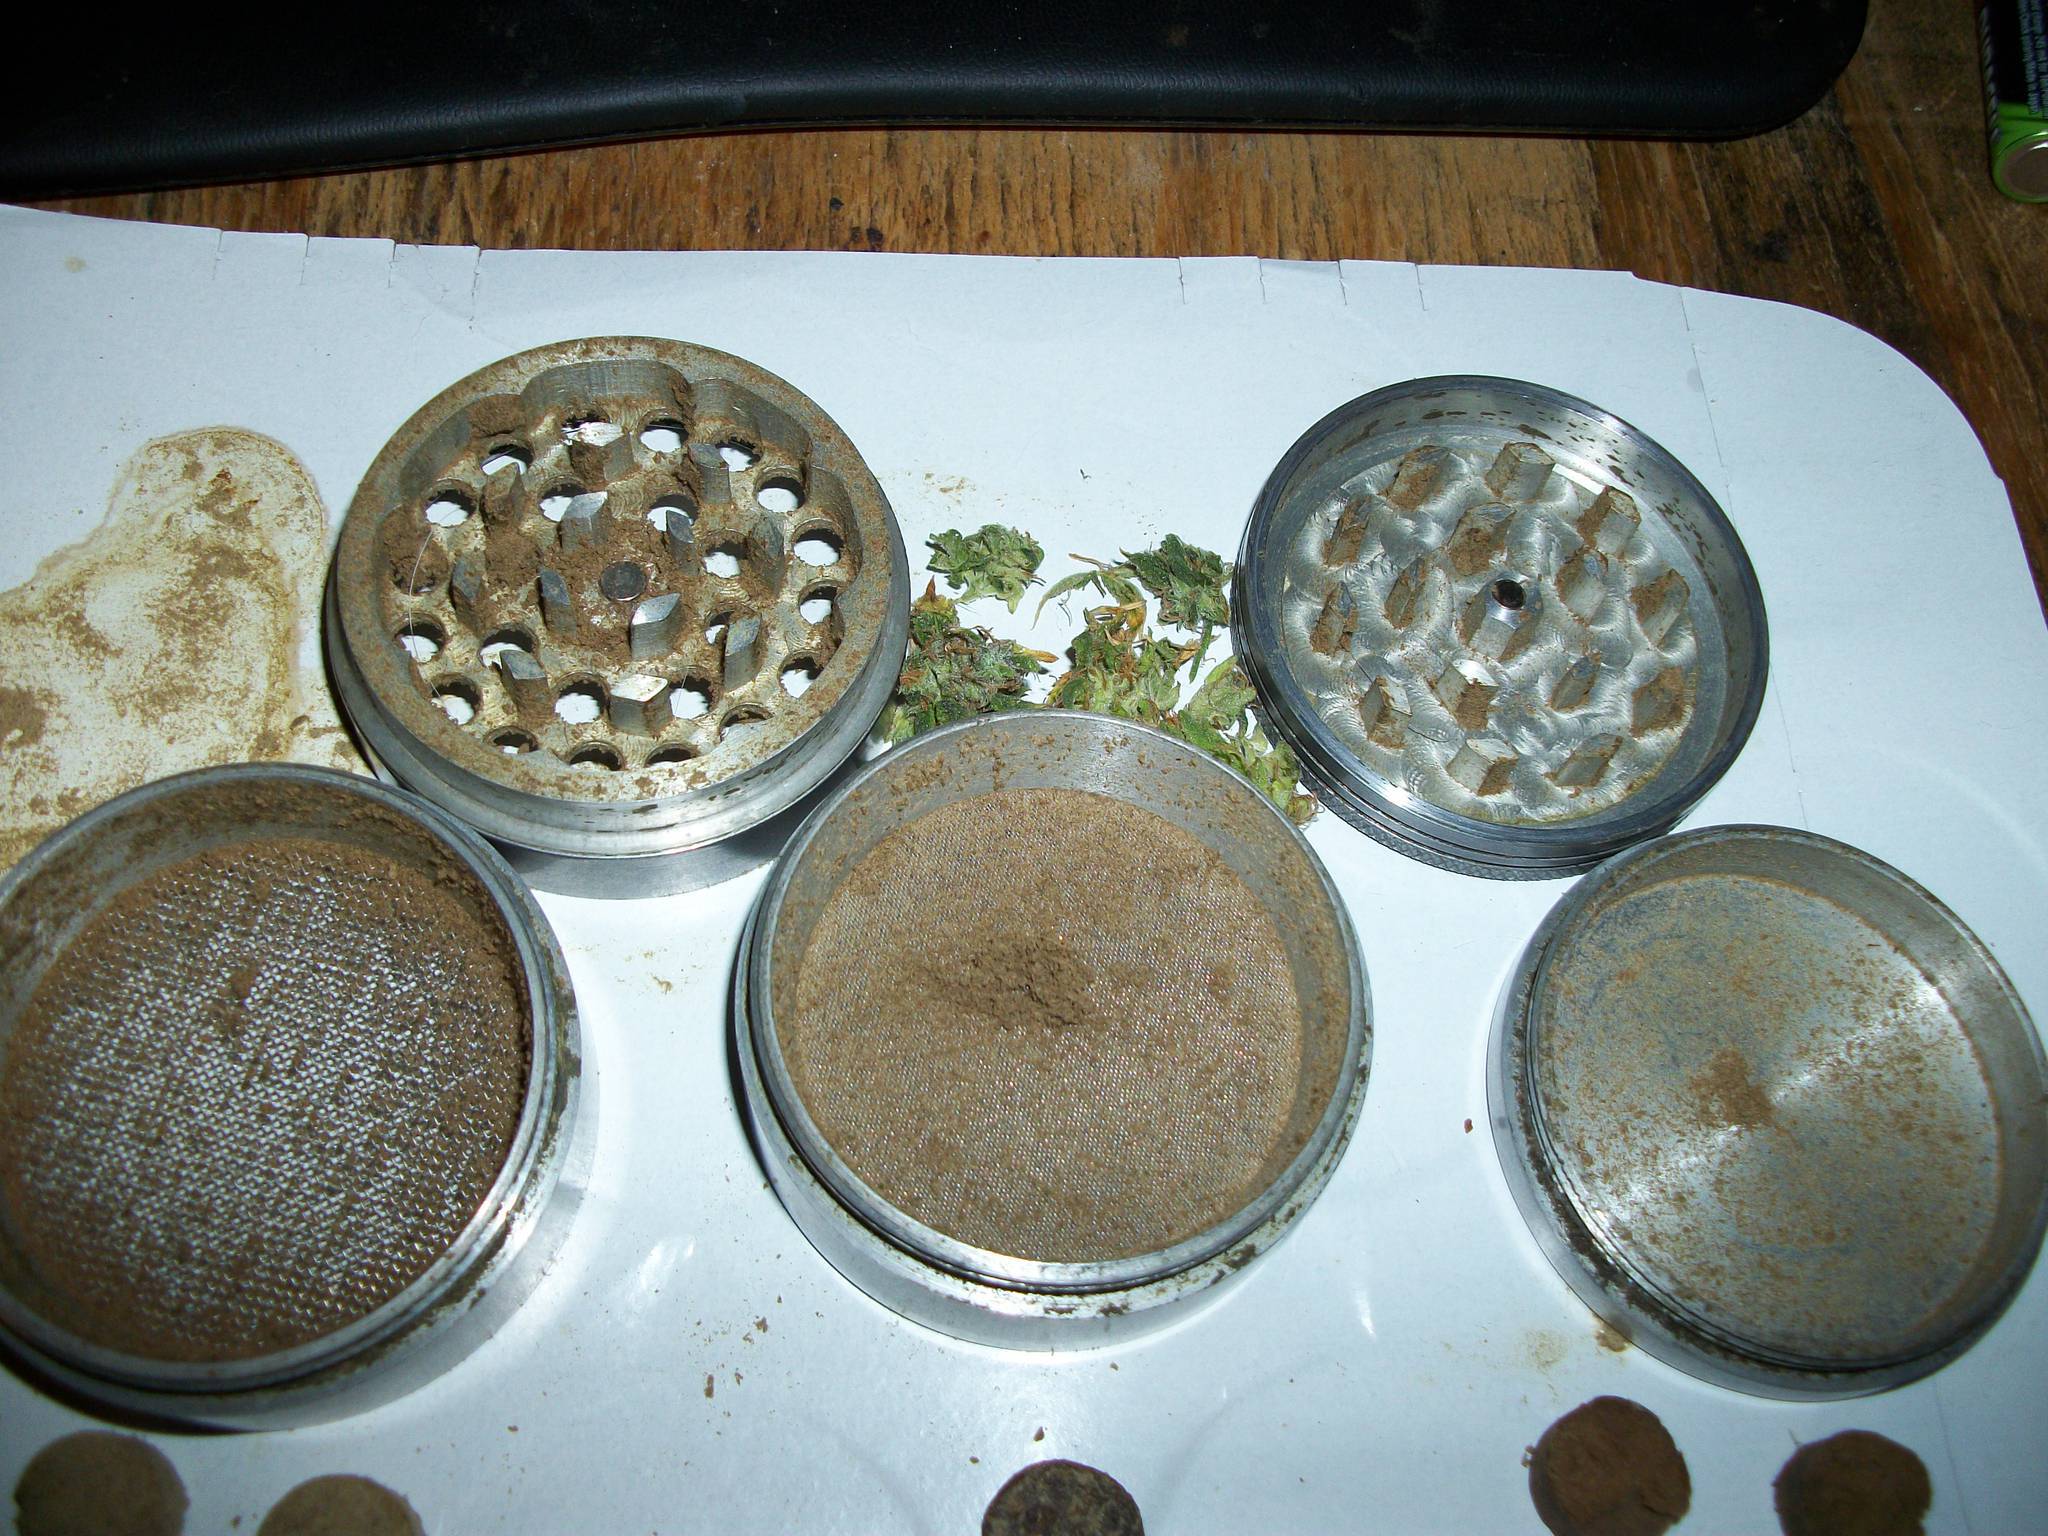 big grinder for herbs